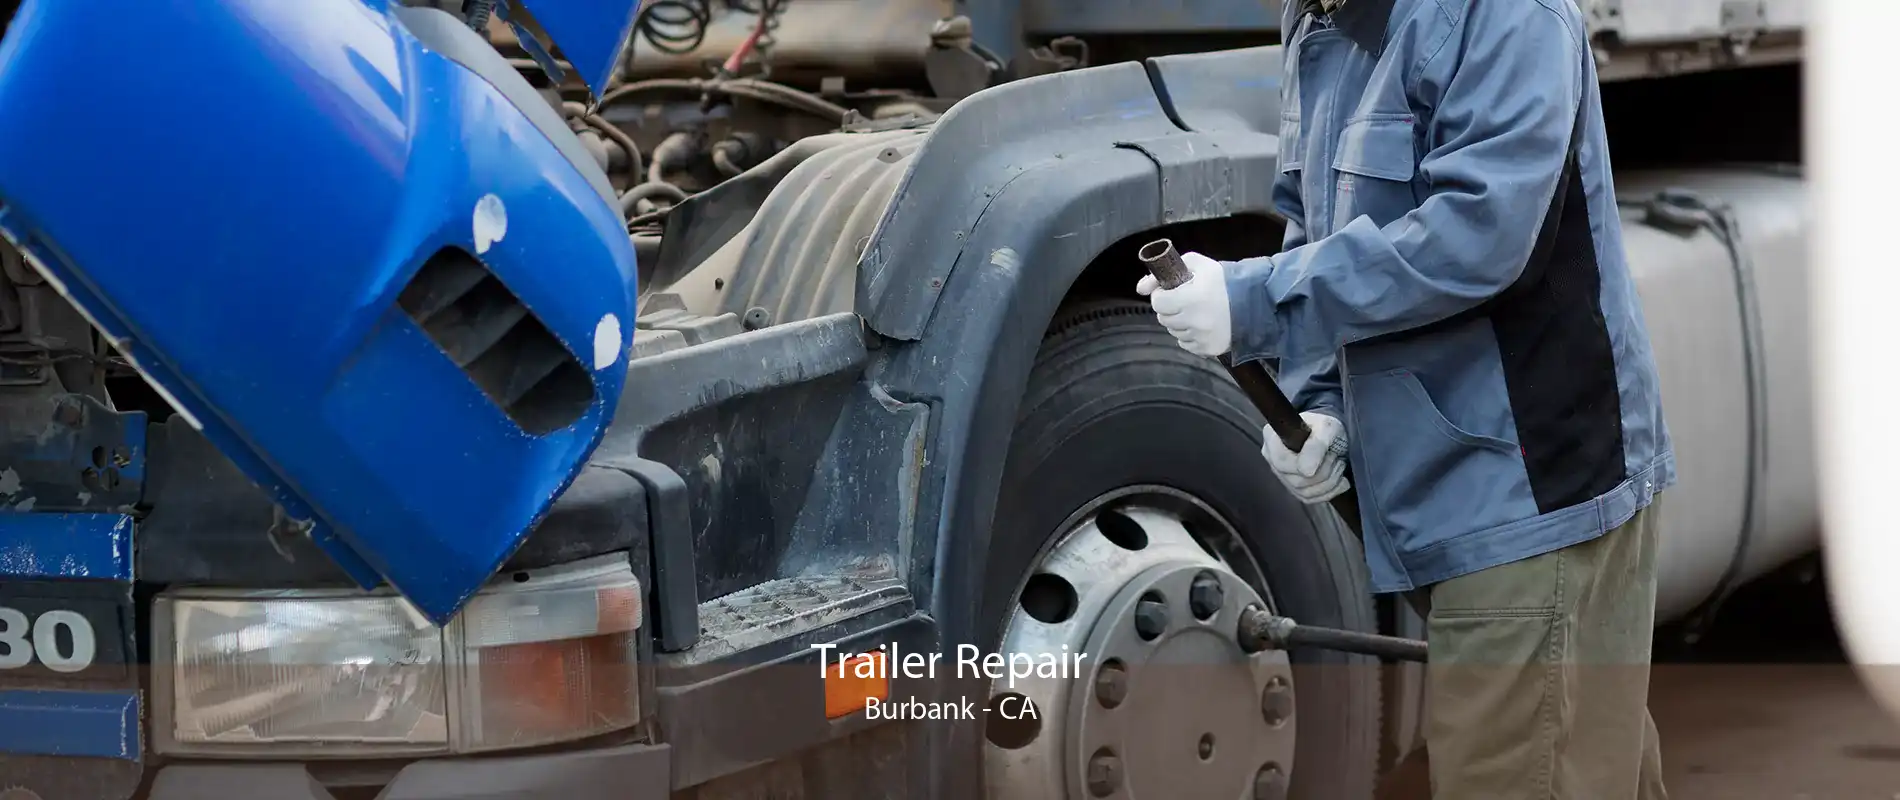 Trailer Repair Burbank - CA